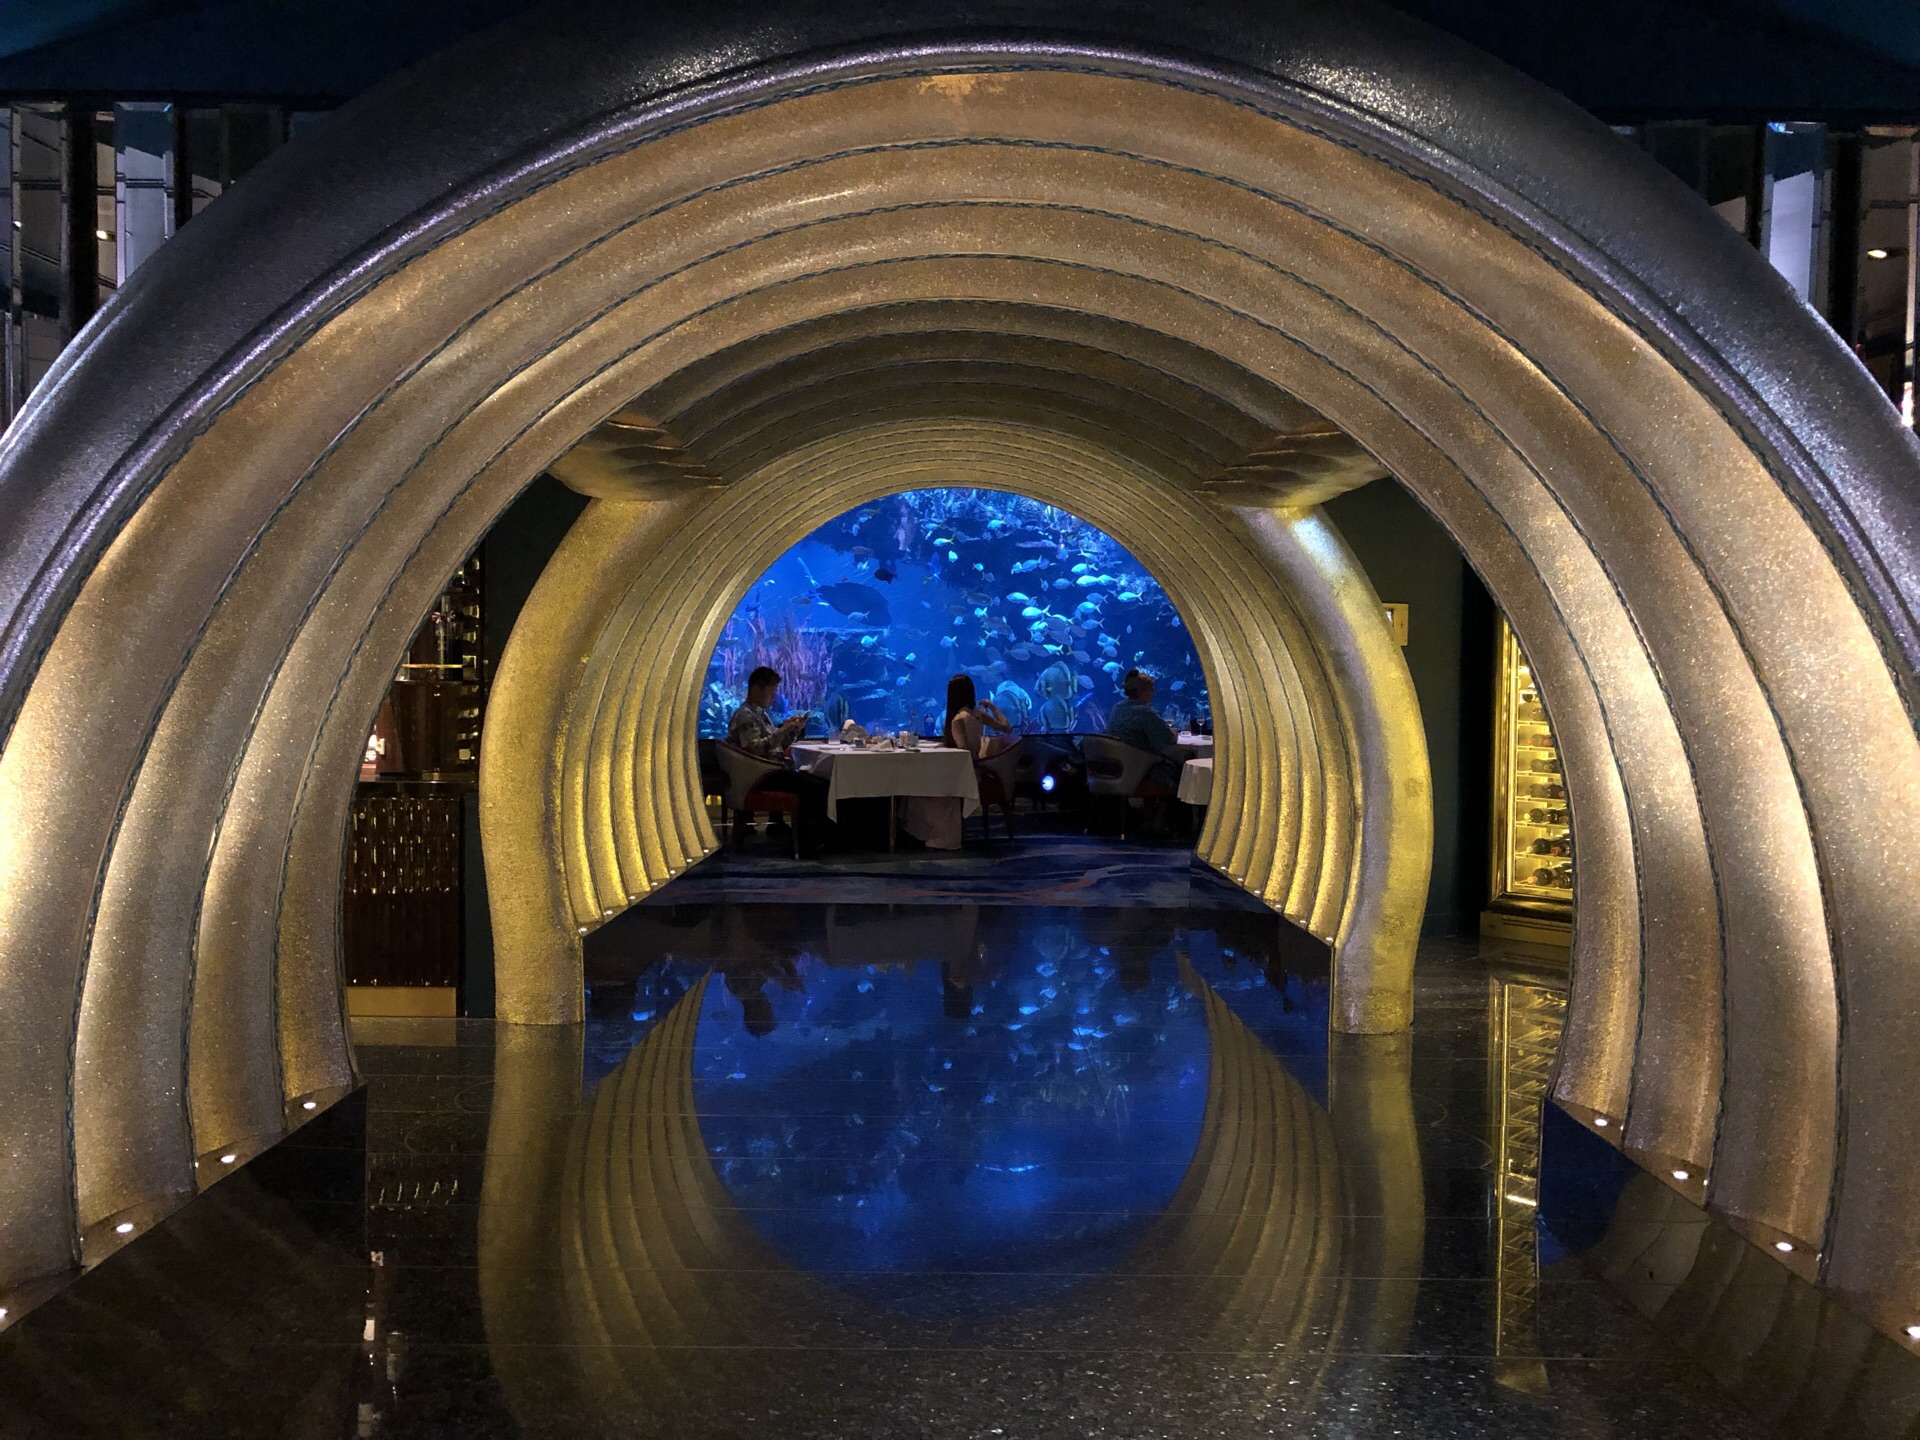 带你开开眼——我国最大的海洋馆主题餐厅 - 北京雅瑞海洋